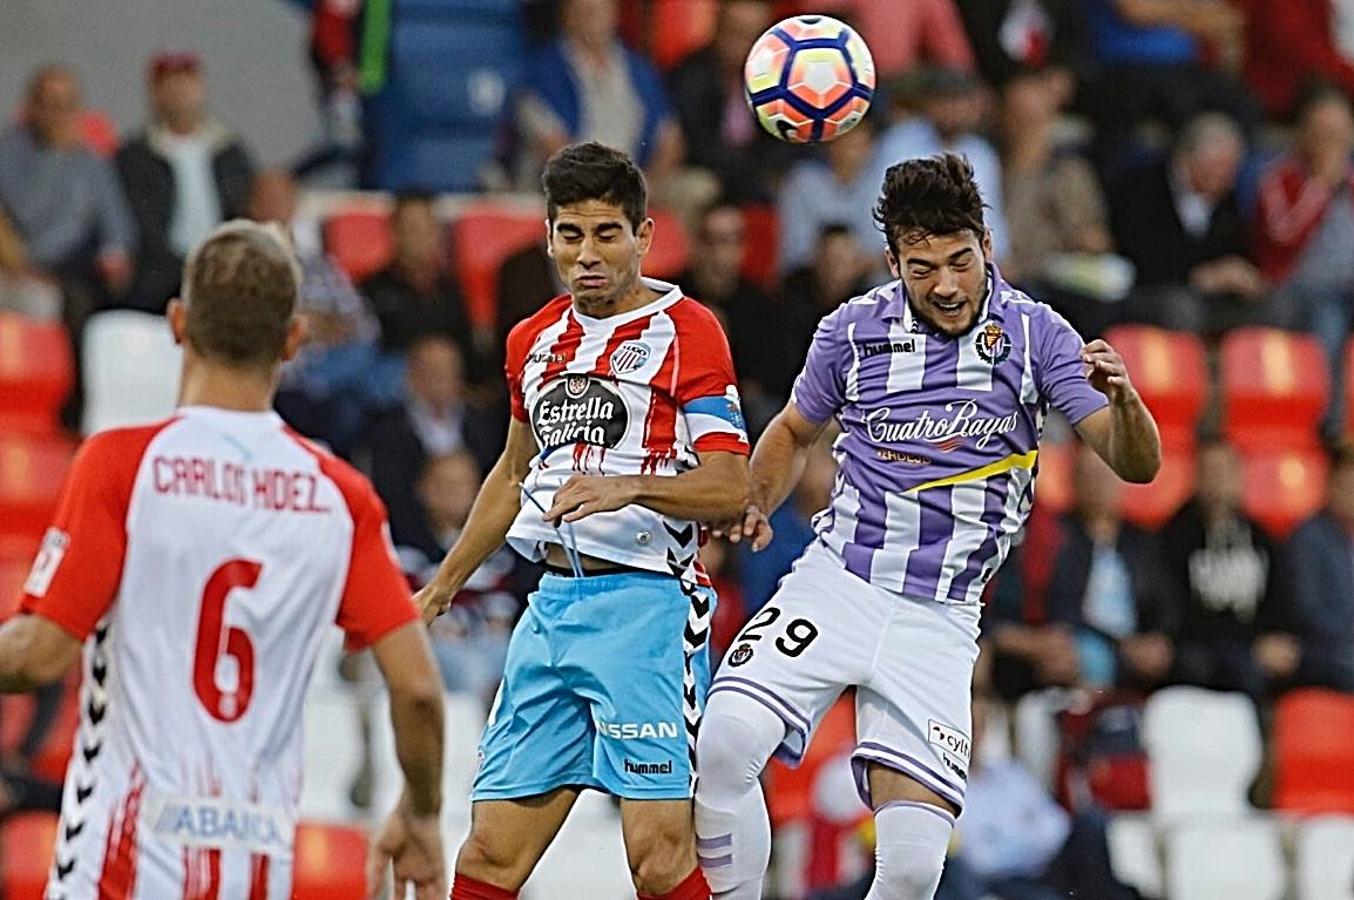 Lugo 1-0 Real Valladolid